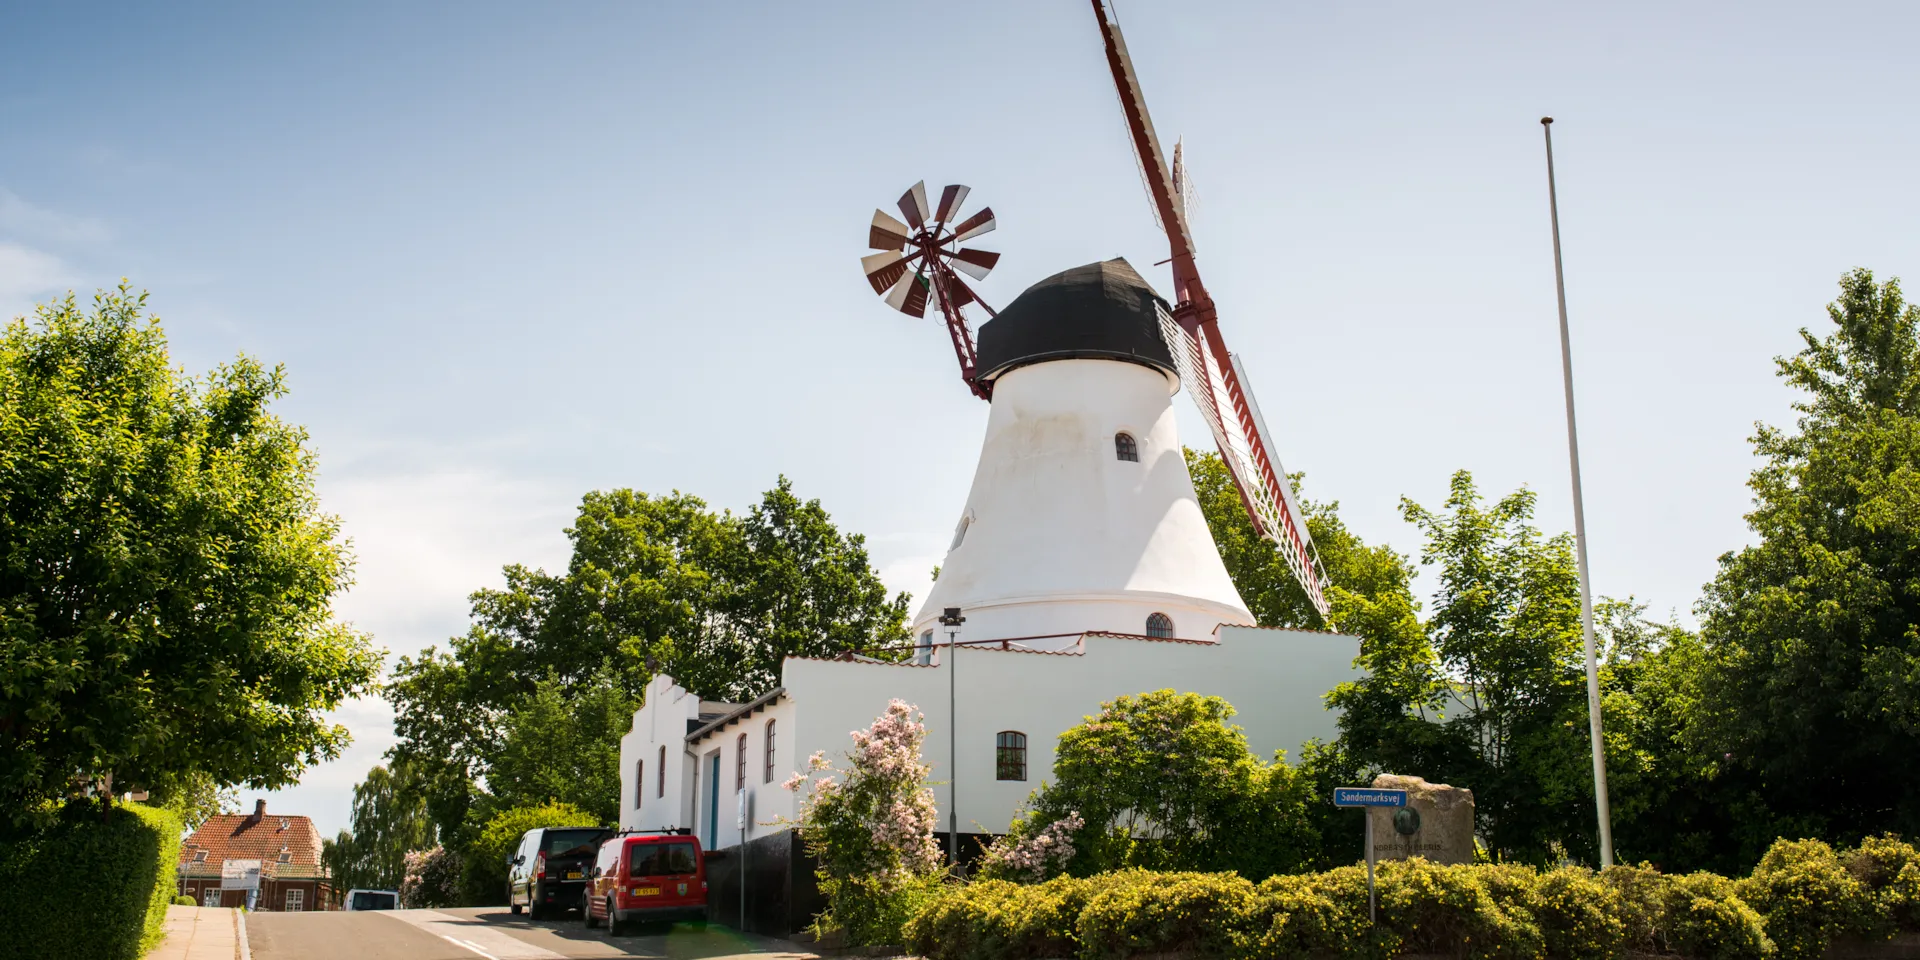 Vejle Windmill